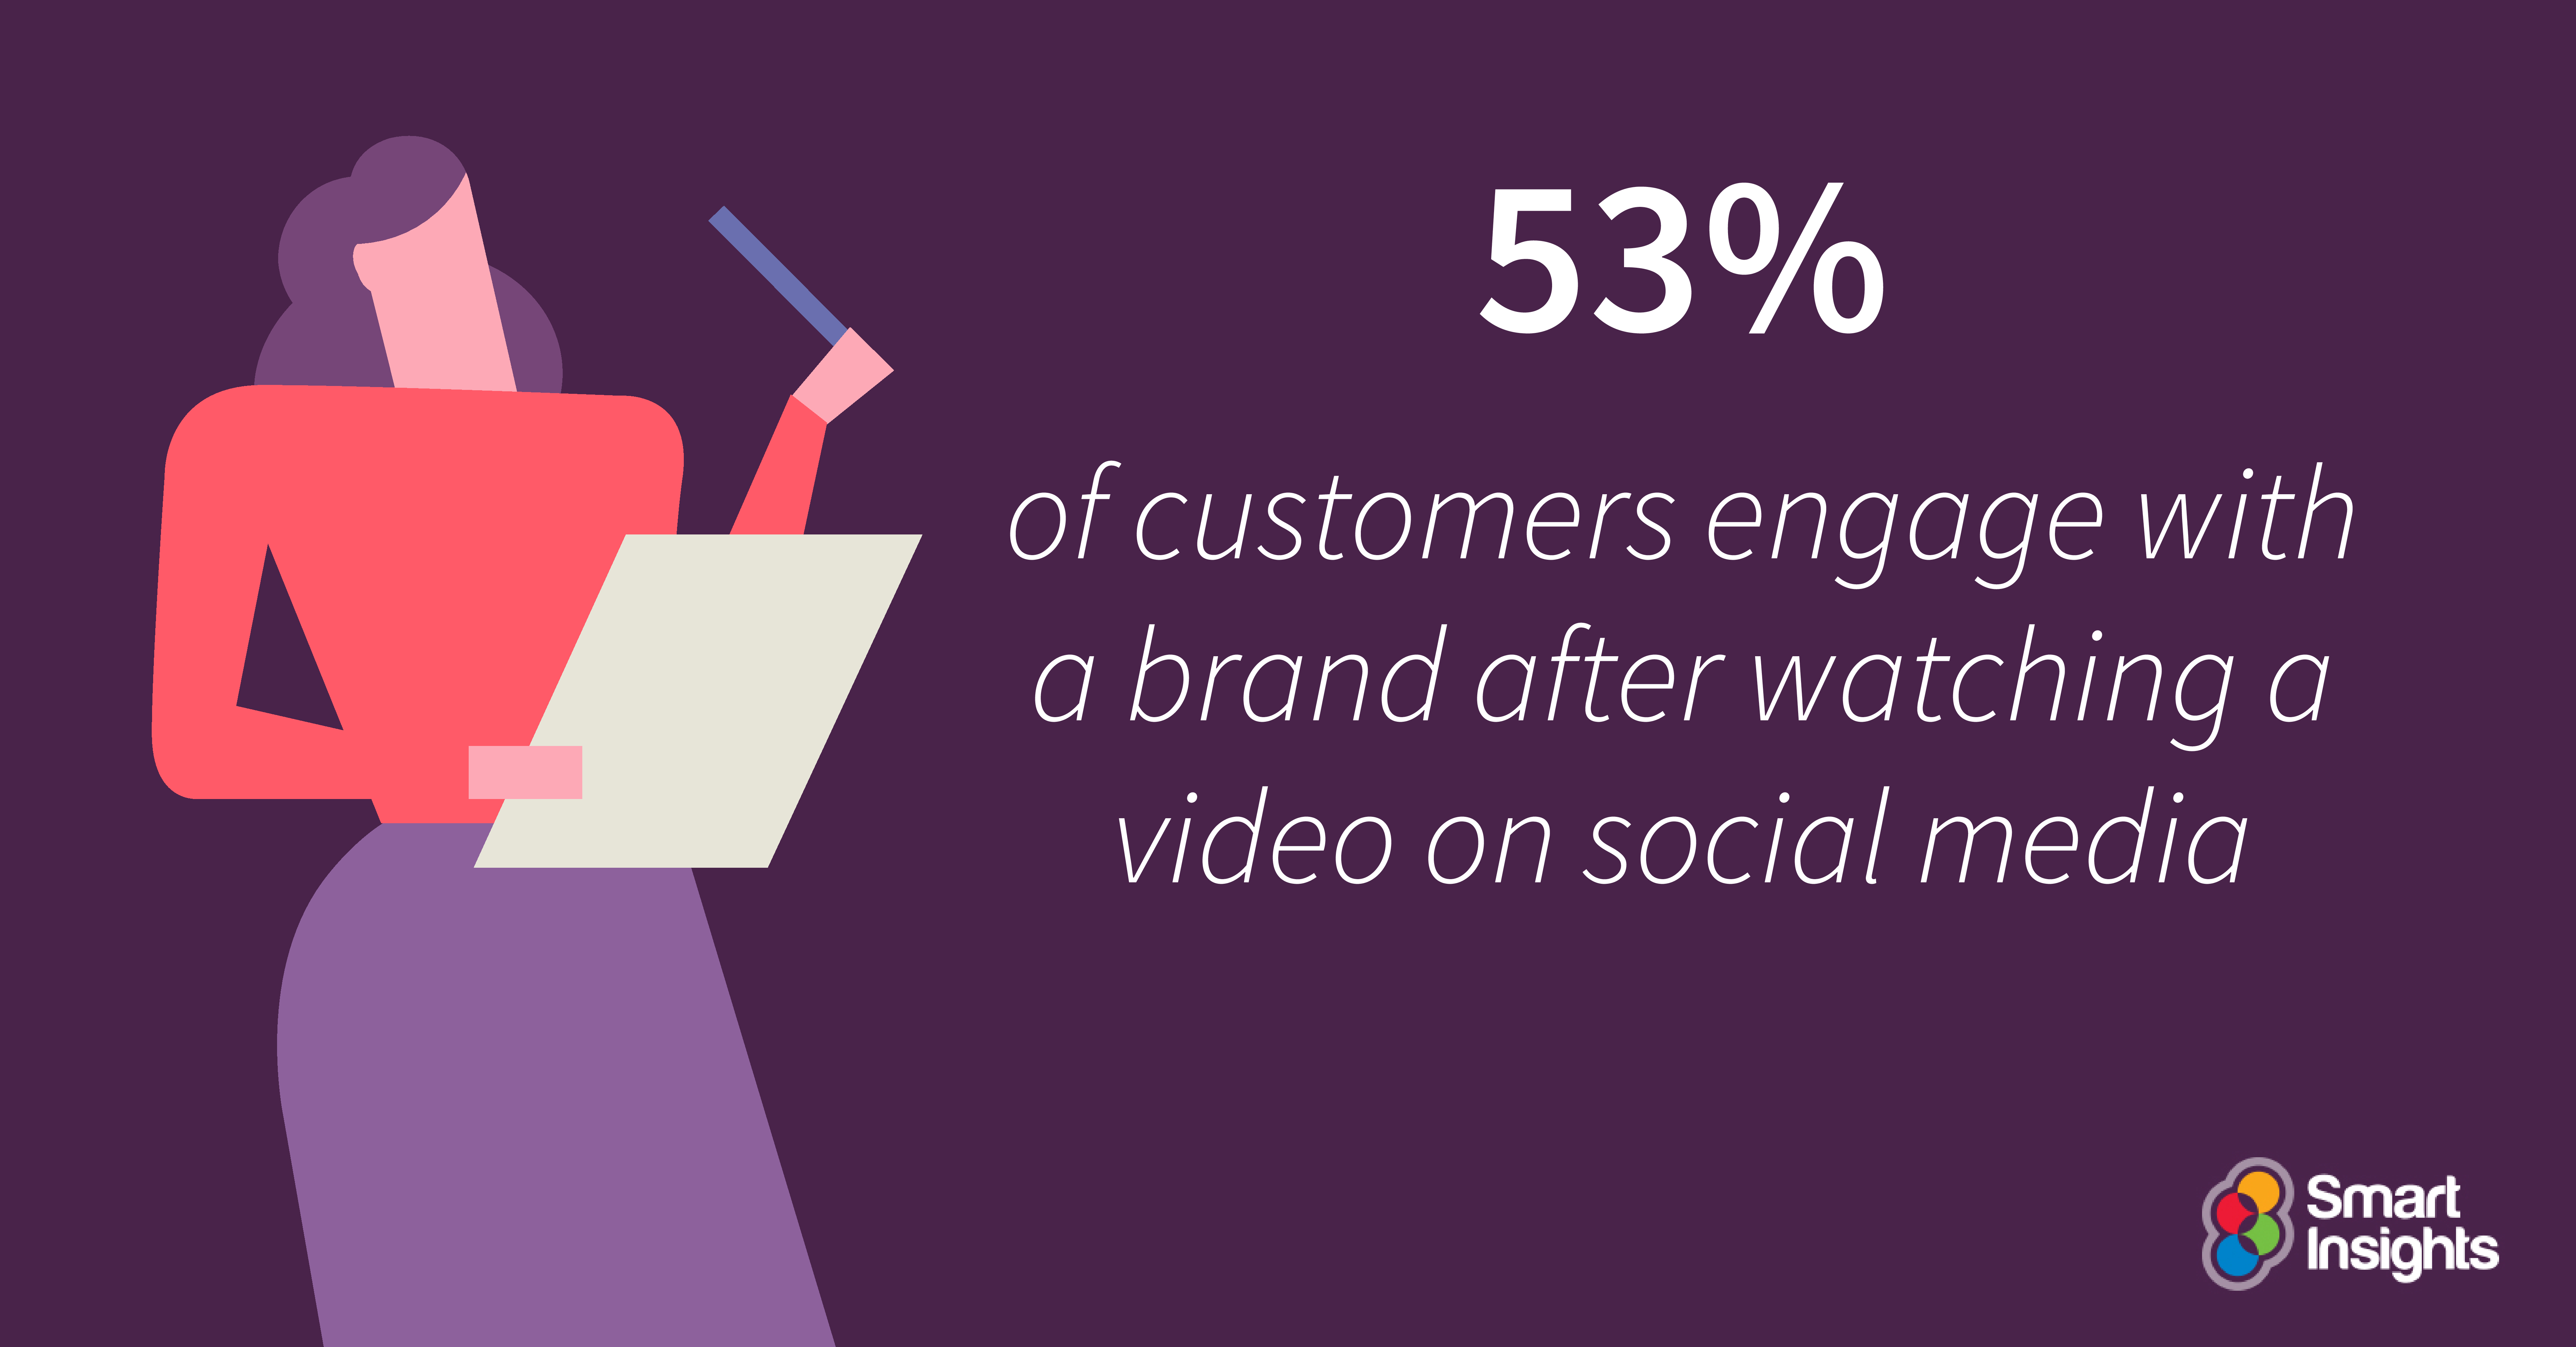 Il 53% dei clienti si occupa di witha. marchio dopo aver visto un video sui social media